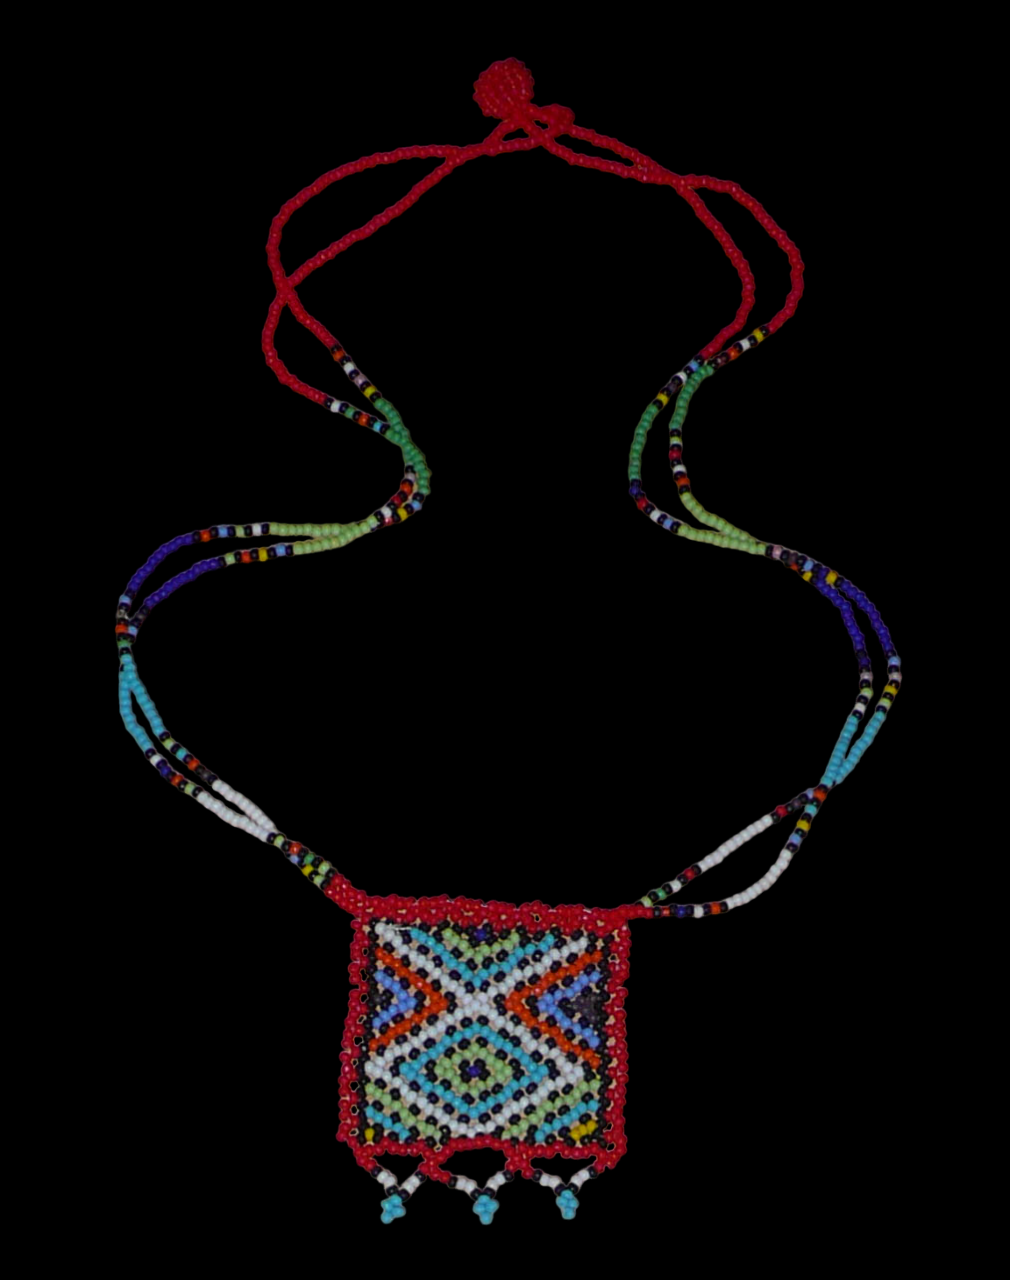 Collier africain composé de perles de rocaille rouges agrémenté d'un pendentif carré aux motifs multicolores zoulous. Il mesure 27,5 cm en partant de la nuque jusqu'à la base du pendentif. Le pendentif mesure 5,5 cm sur 4,5 cm. Le collier s'attache avec un fermoir à boule. Timeless Fineries